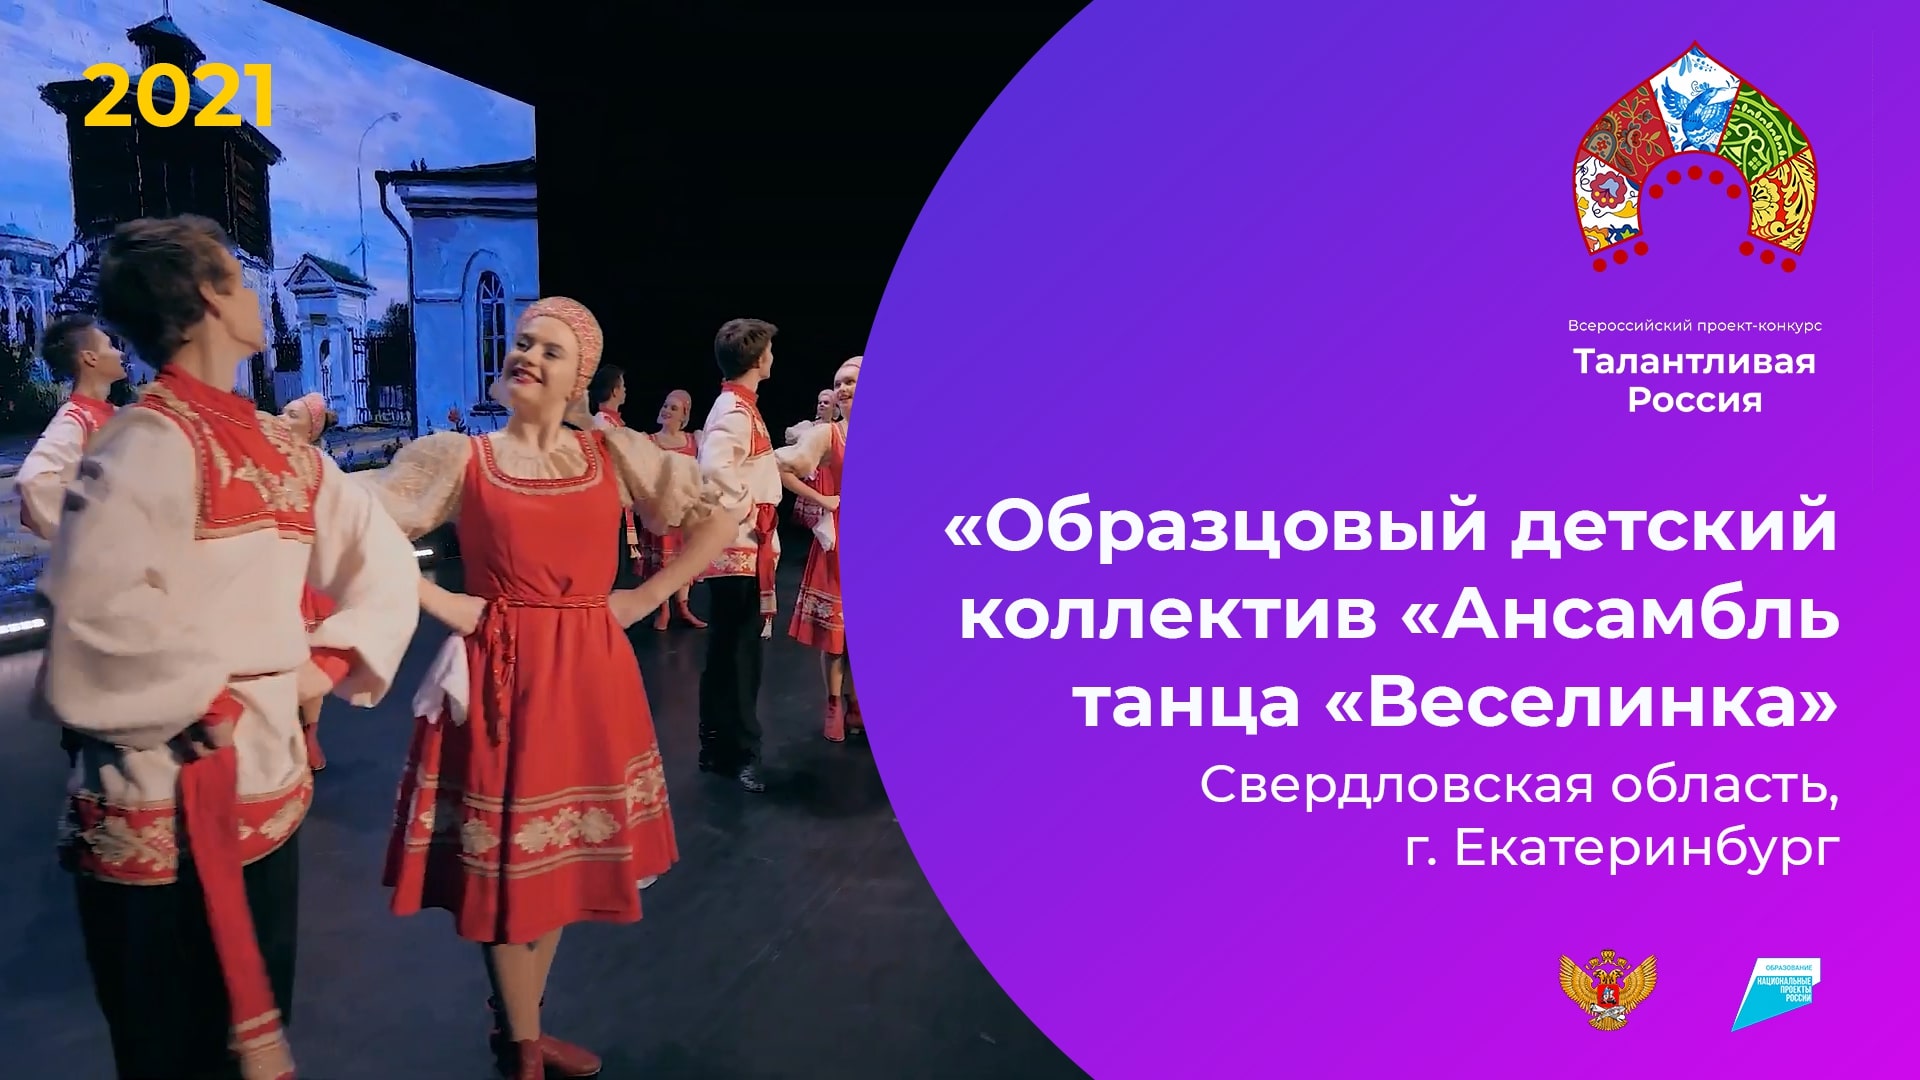 «Образцовый детский коллектив «Ансамбль танца «Веселинка»